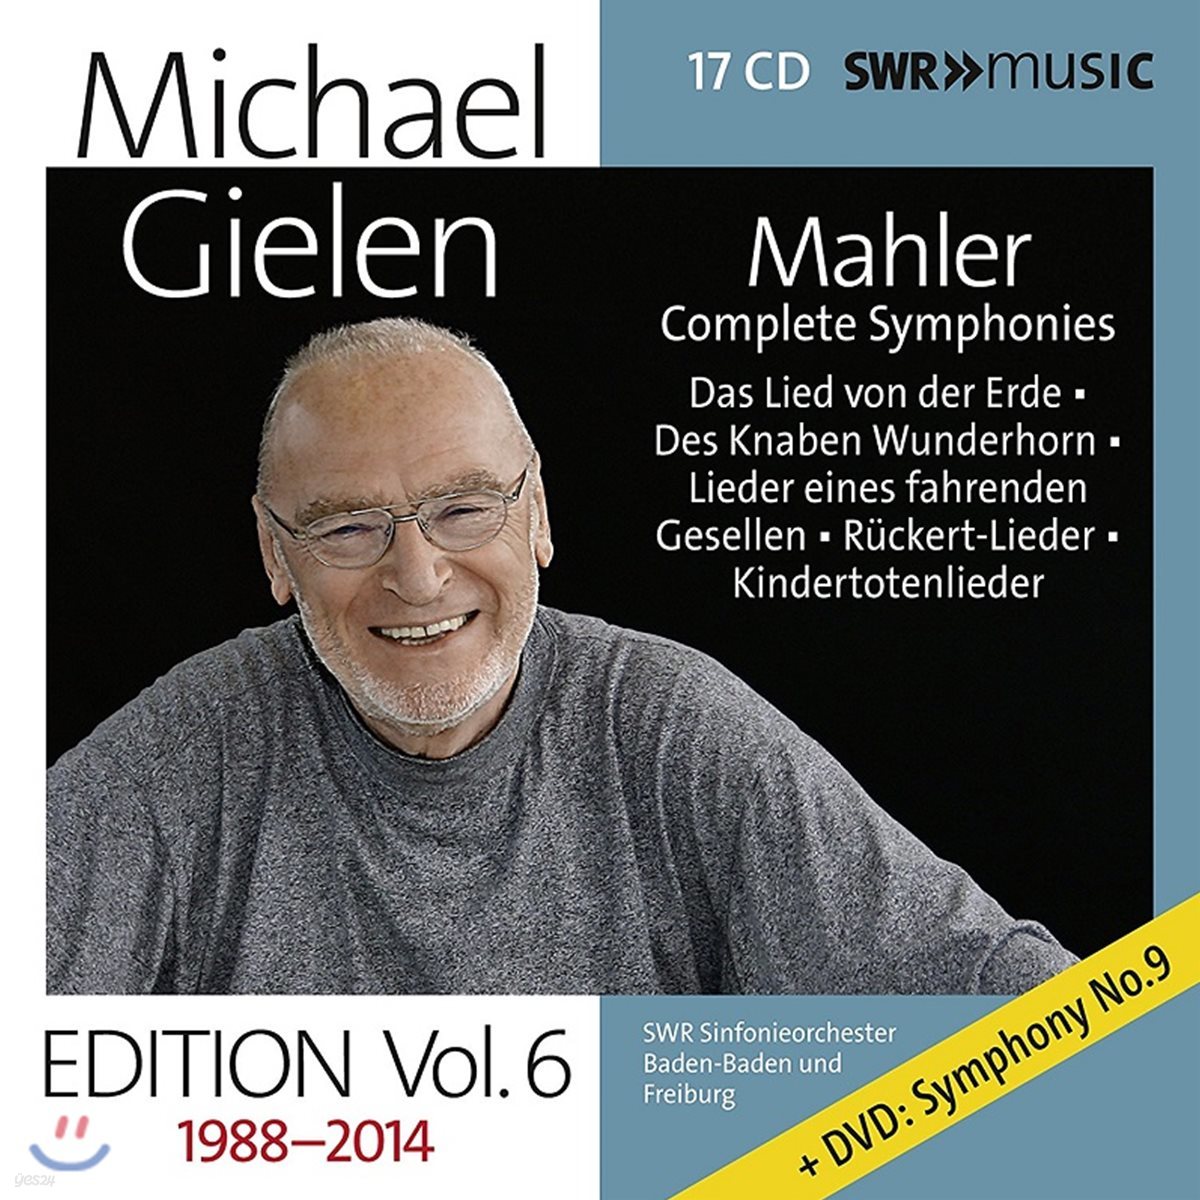 미하엘 길렌 에디션 6집 - 말러: 교향곡 전곡 (Michael Gielen Edition Vol. 6 1988-2014)